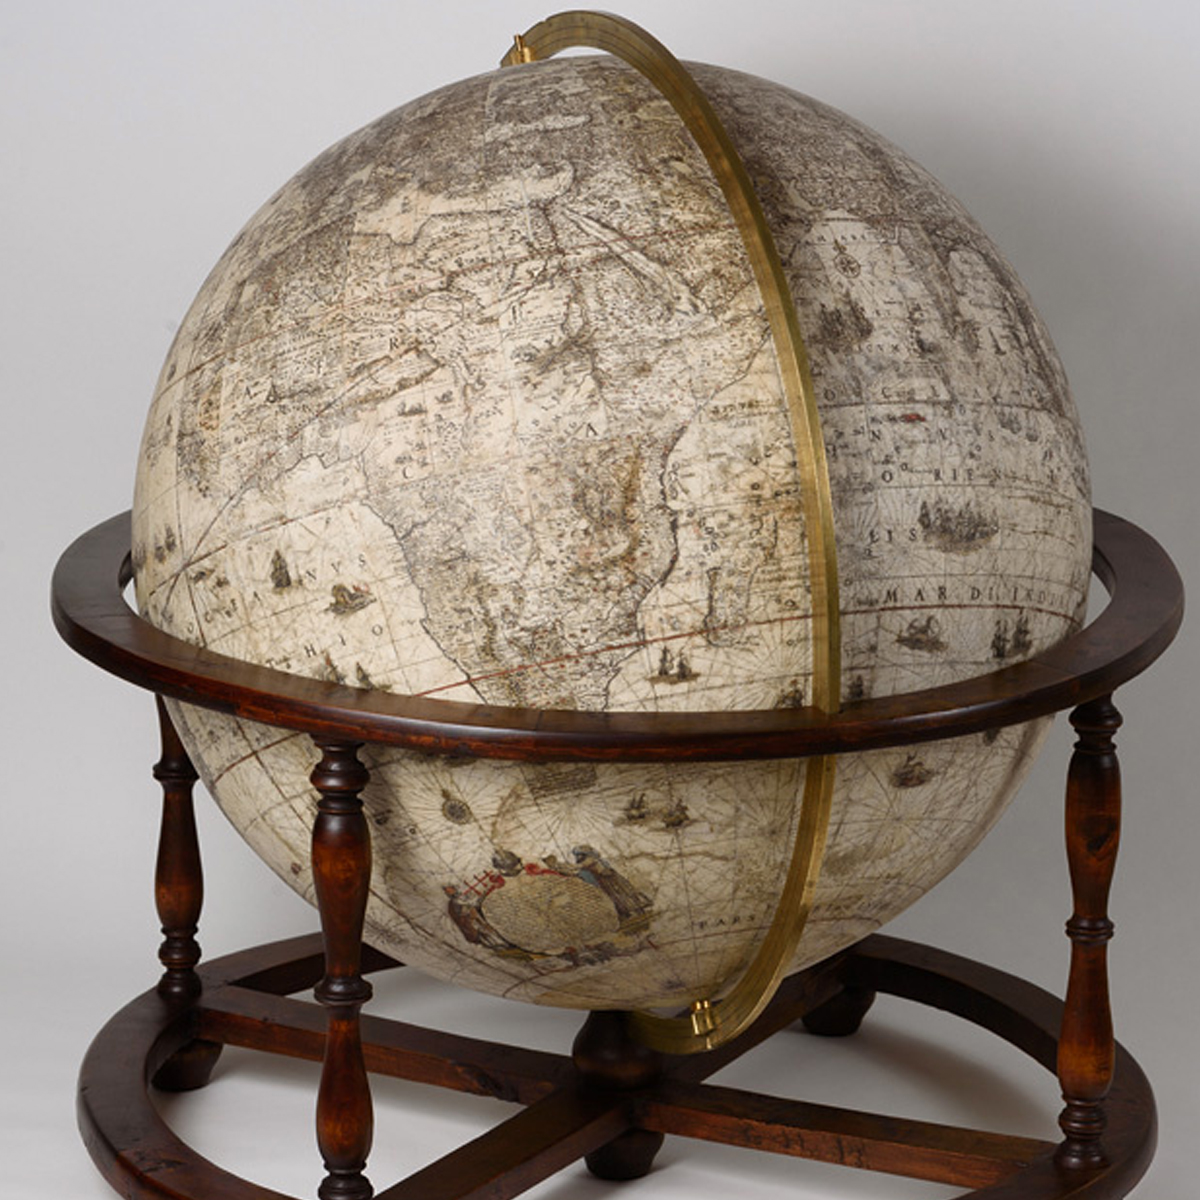 глобус петра 1 в историческом музее